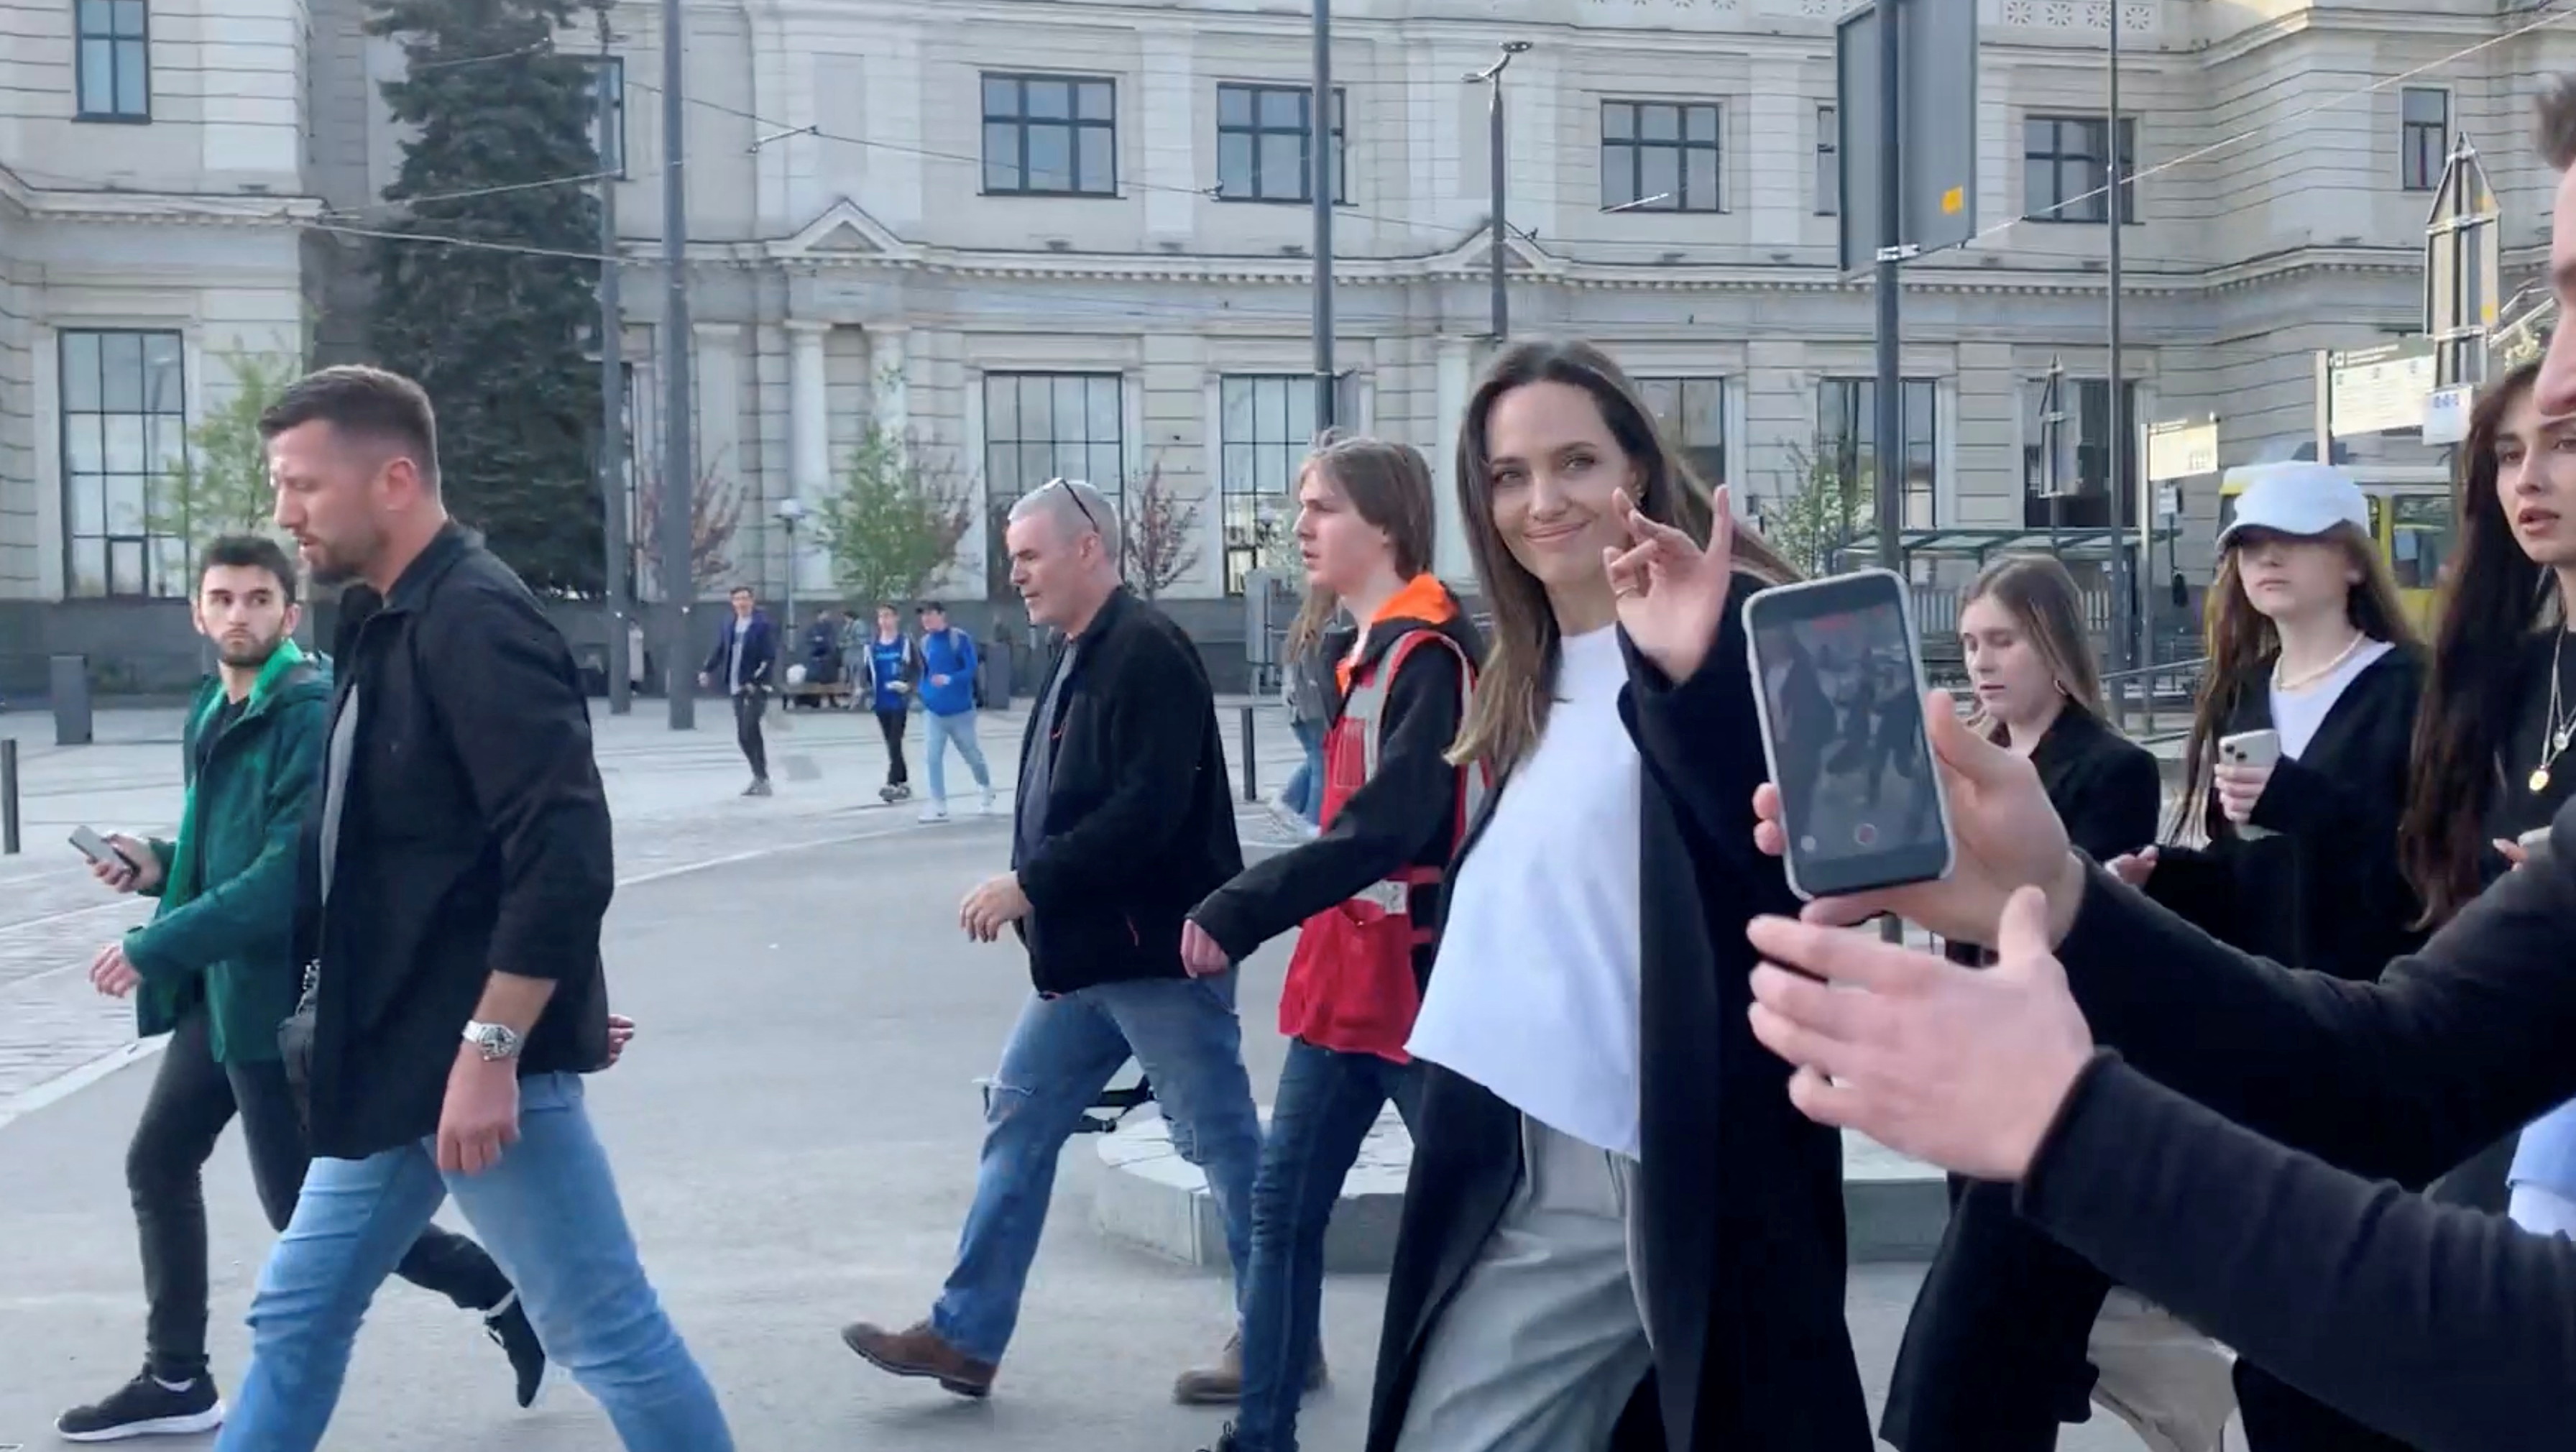 La propia actriz se tomó un tiempo para saludar a la cámara y dijo “estoy bien” cuando se le preguntó. (Lviv.Media via REUTERS)